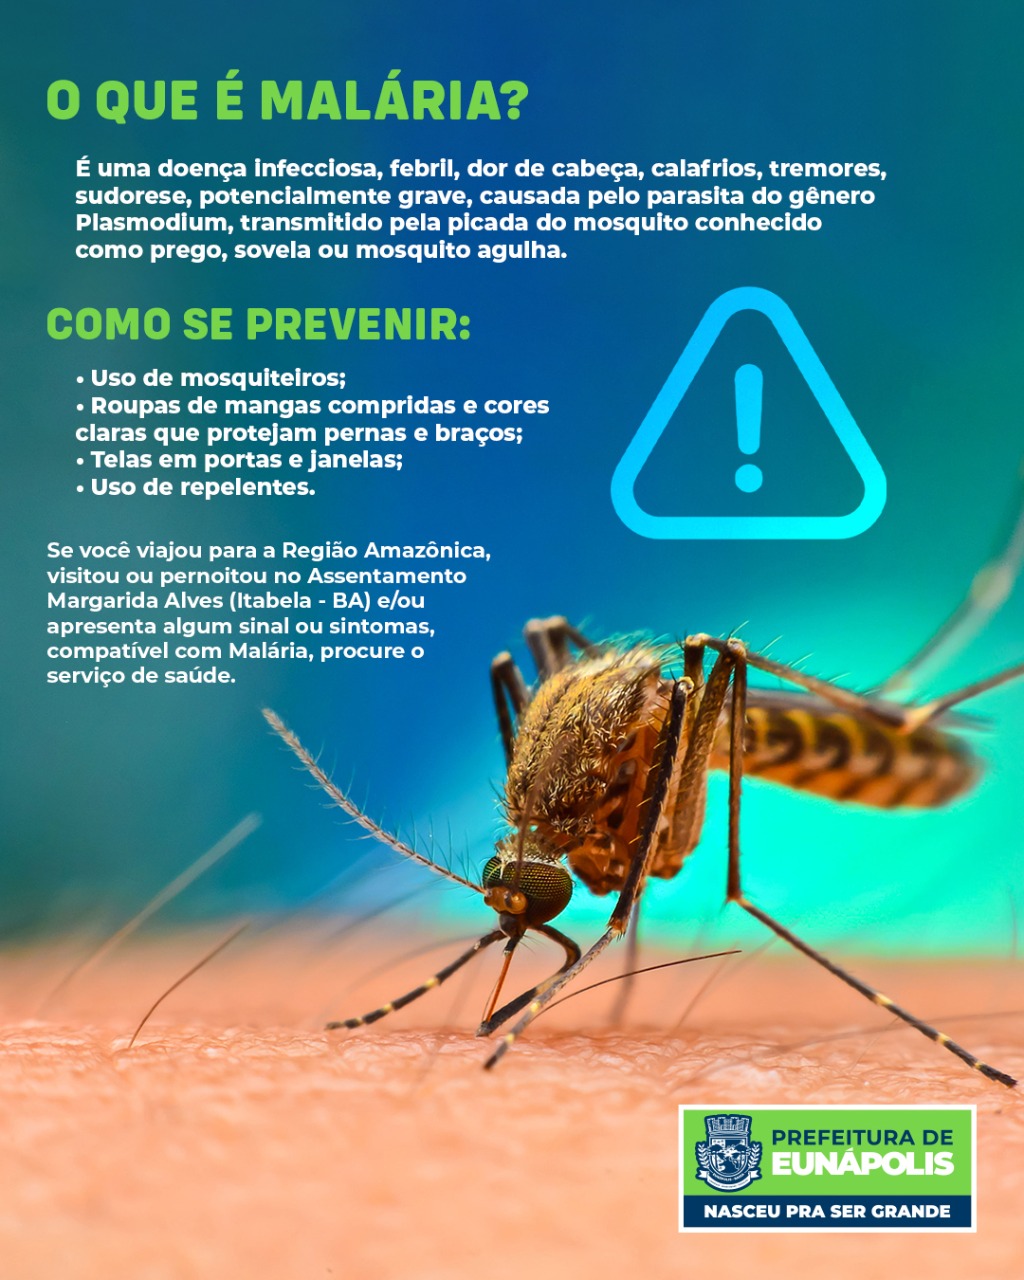 Informações sobre o que é malária e medidas para prevenção da doença